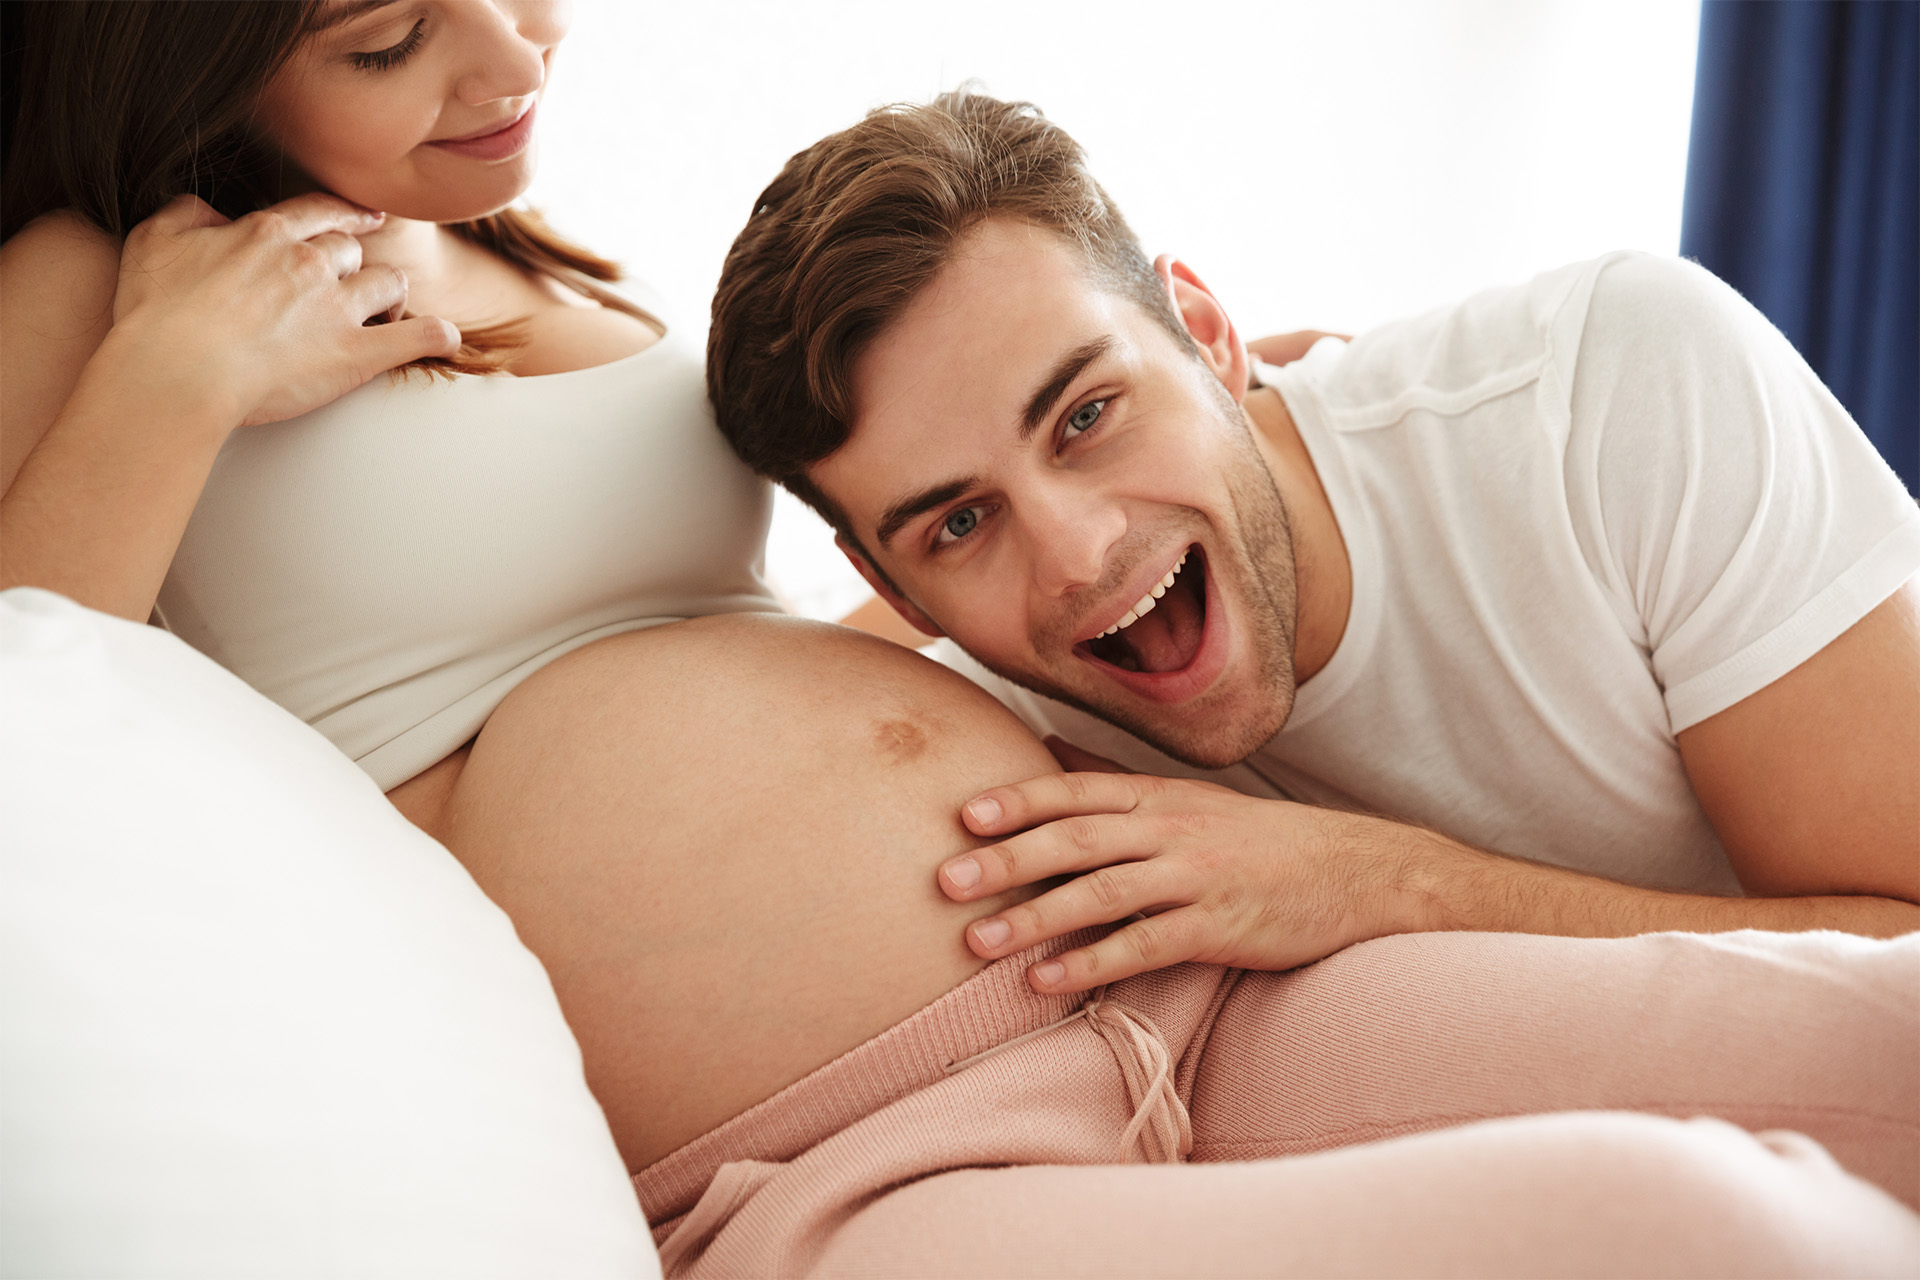 Ciąża seks sex w ciąży dziecko wielkości bakłażana formommy